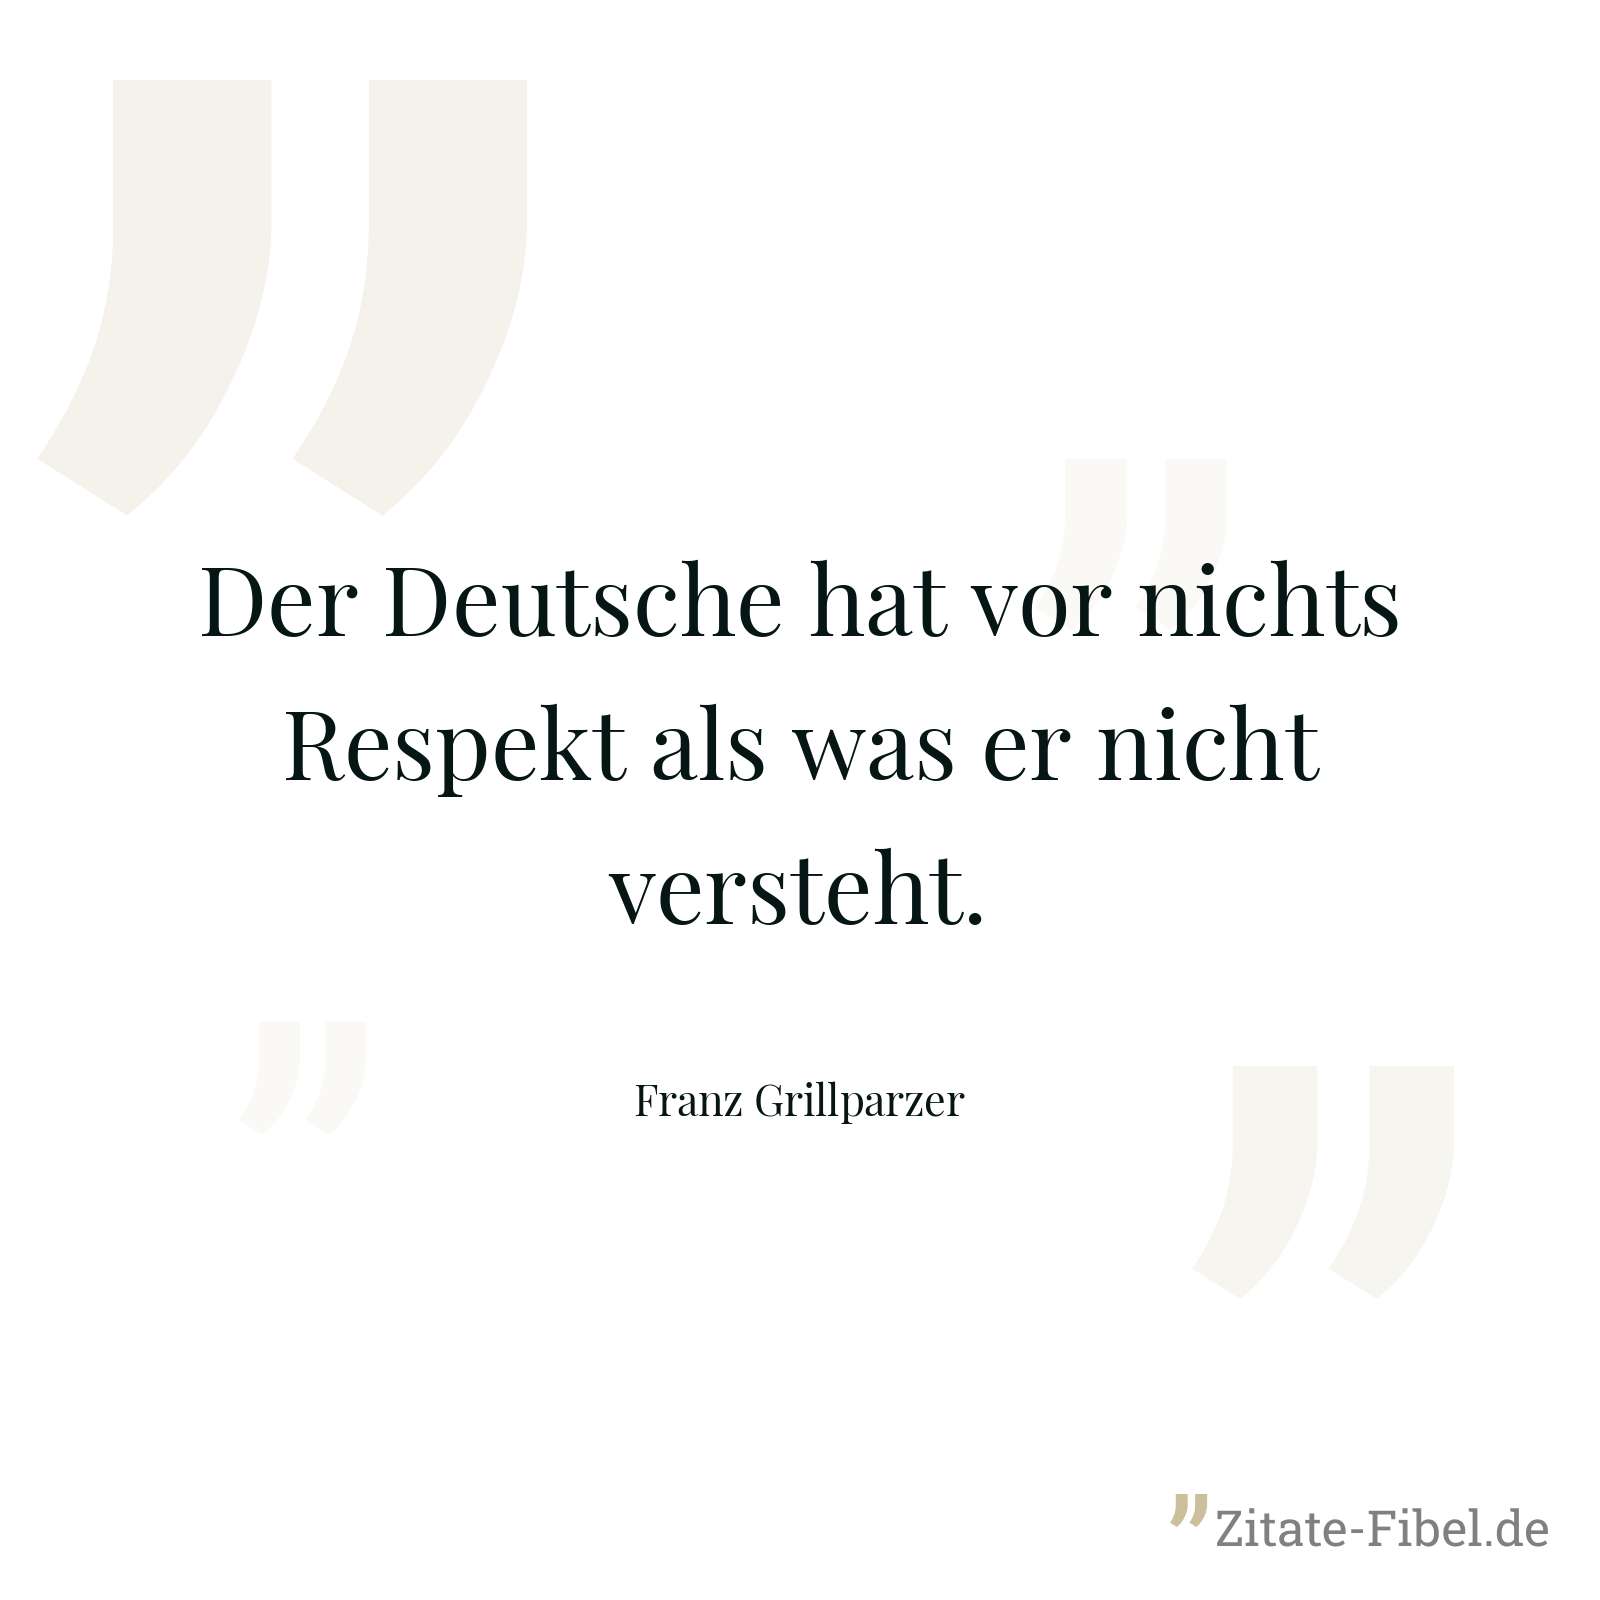 Der Deutsche hat vor nichts Respekt als was er nicht versteht. - Franz Grillparzer